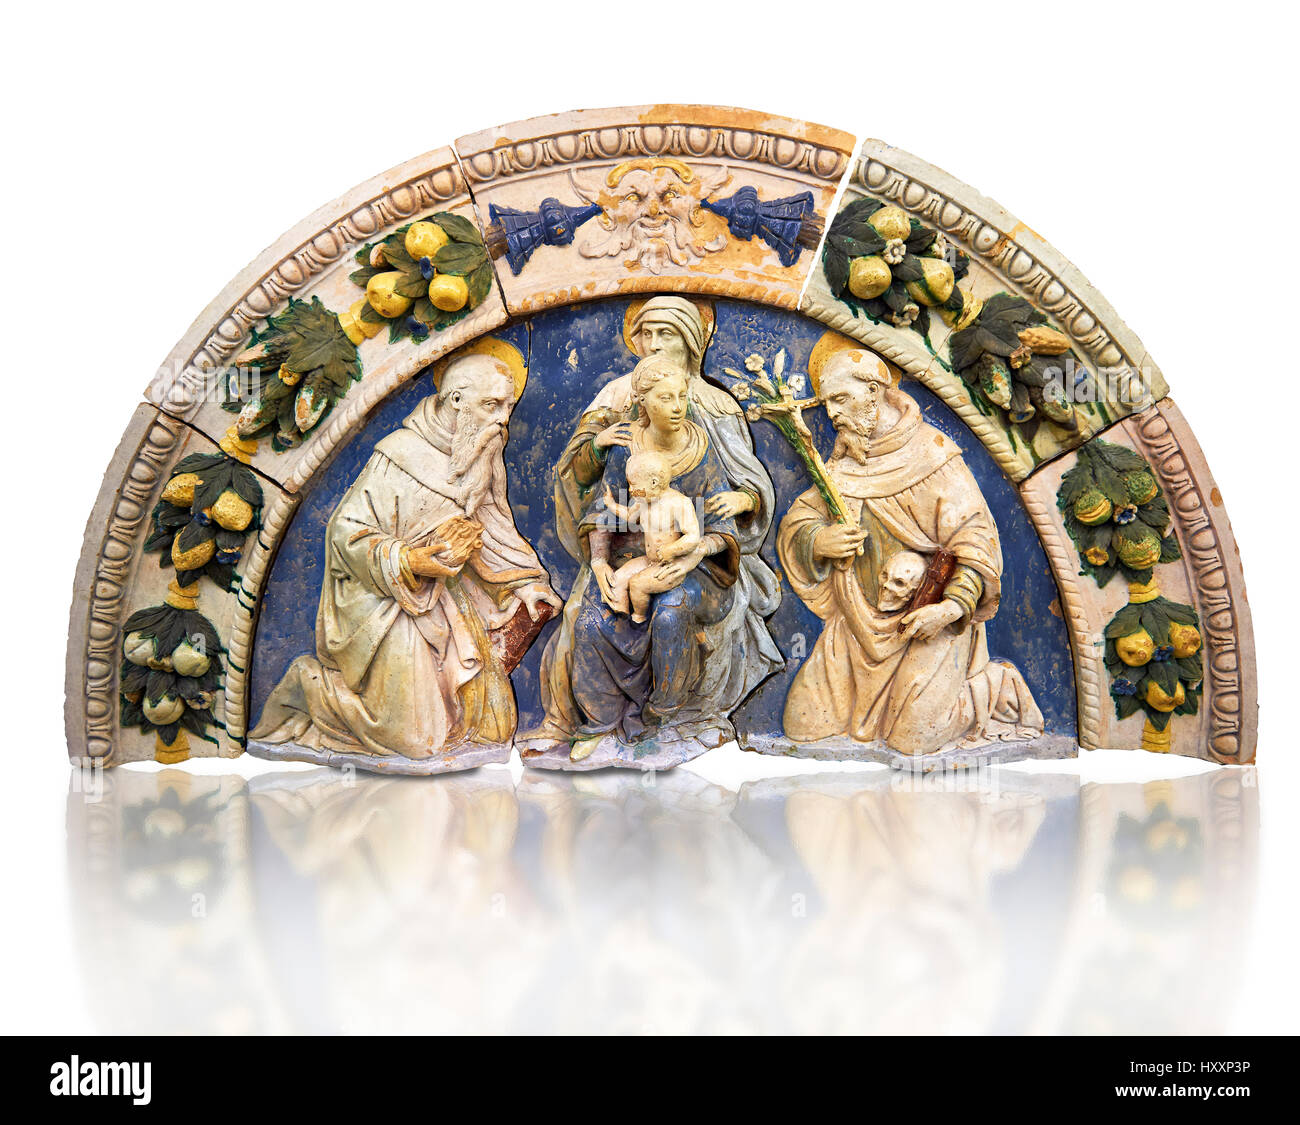 Panel de terracota esmaltada de Santa Ana, la Virgen y el Niño, del siglo XVI por Santi Bugloni de Florencia. Campamento inv 38, el Museo del Louvre, París Foto de stock